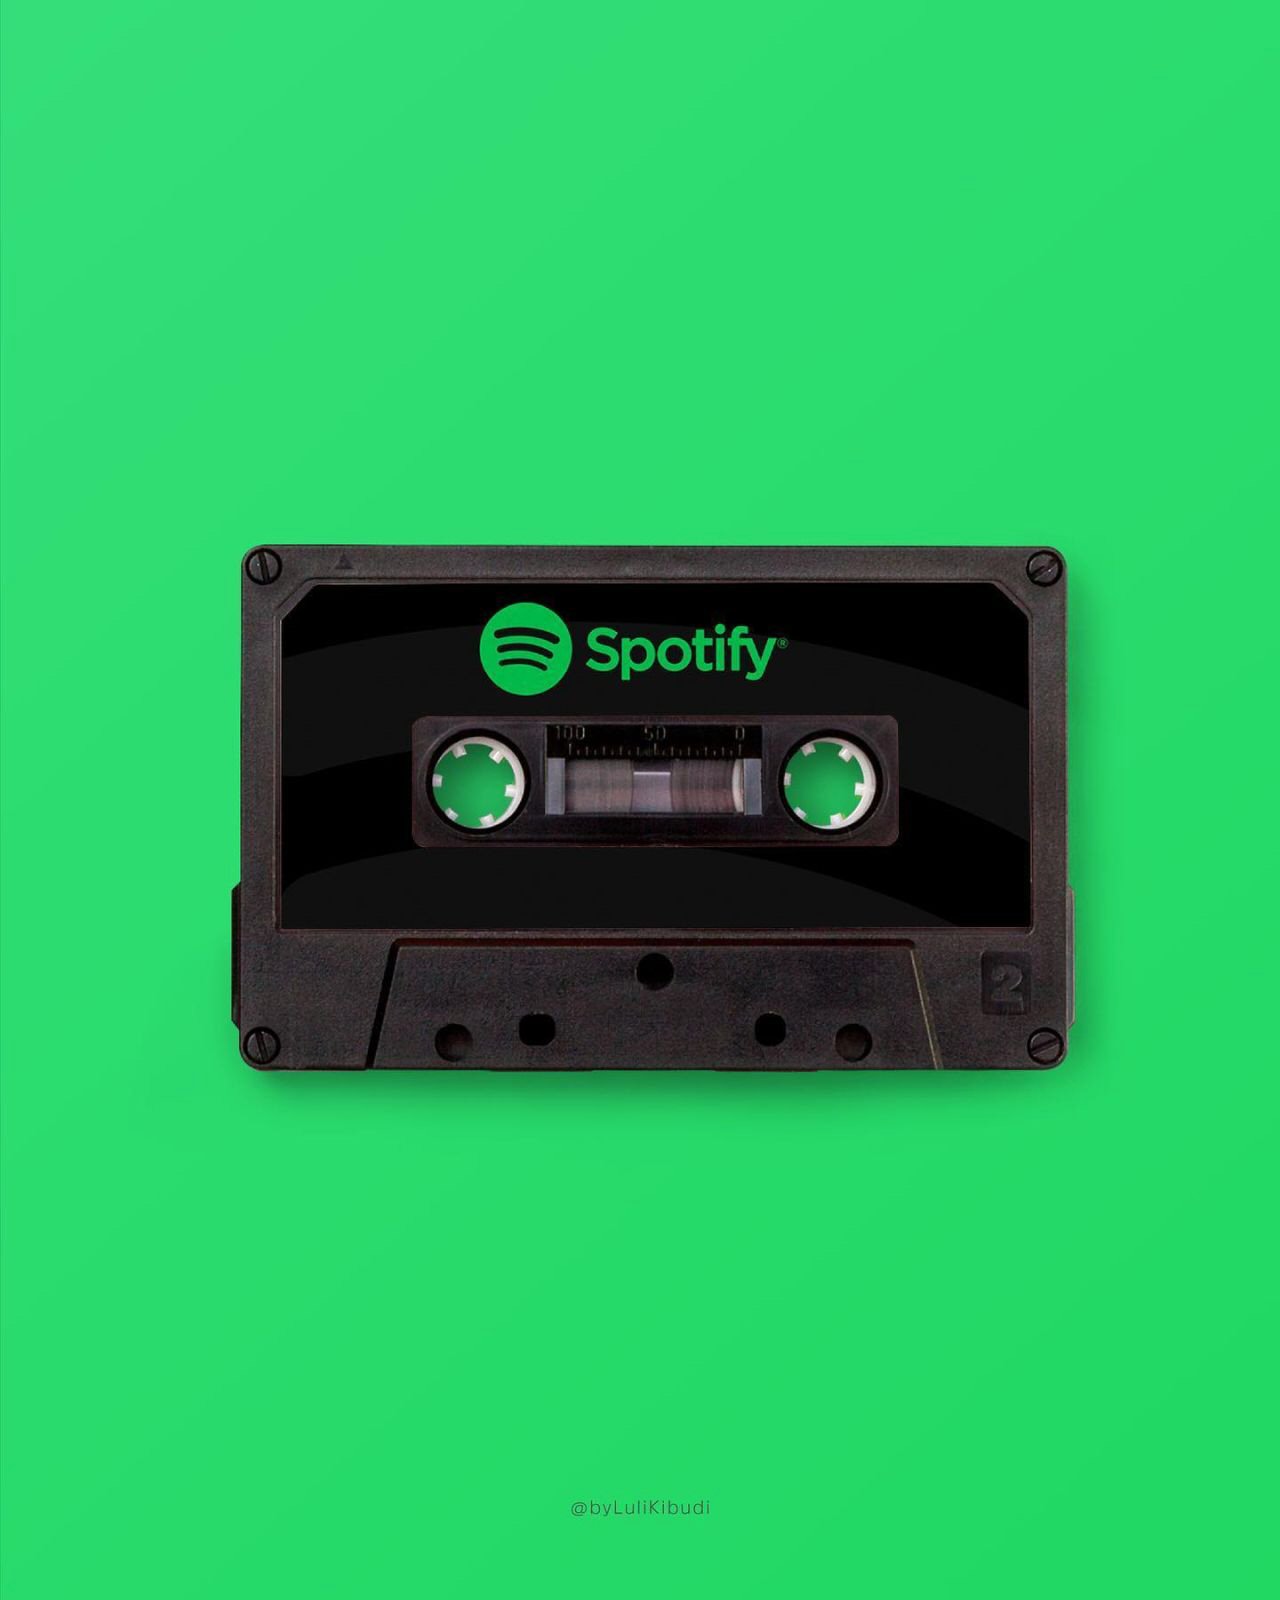 Spotify in retro